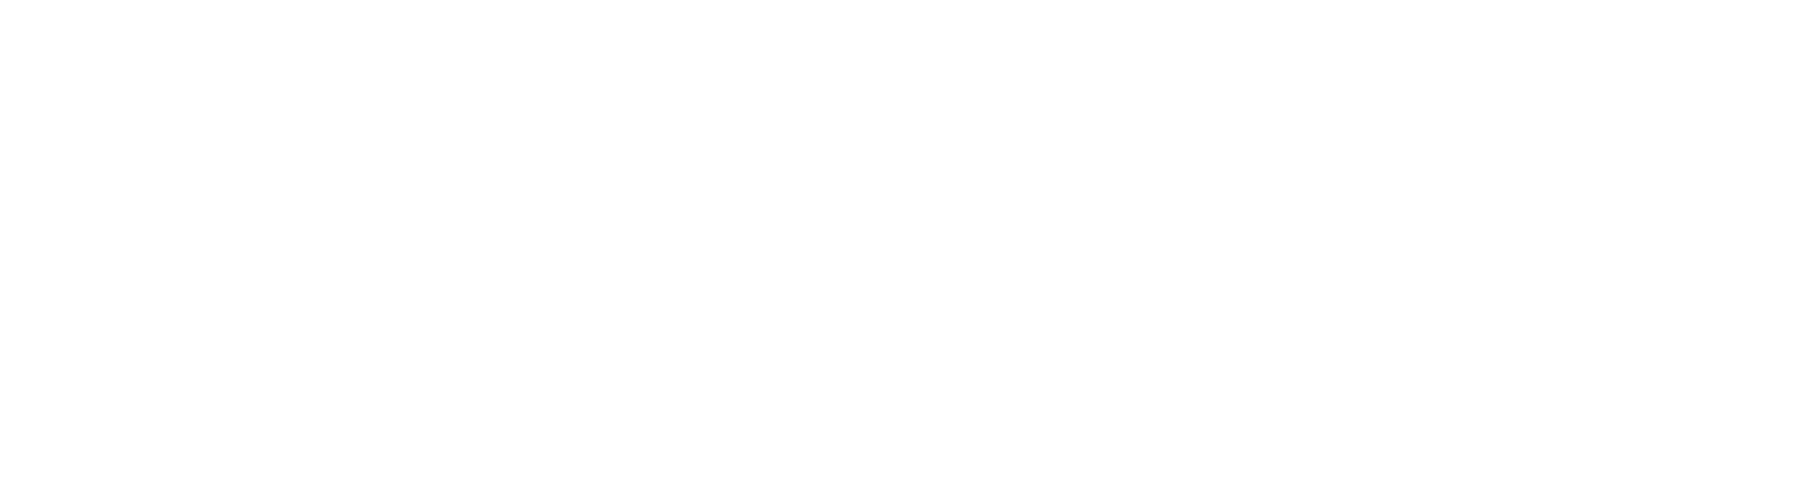 Plan de recuperación, Transformación e Resiliencia